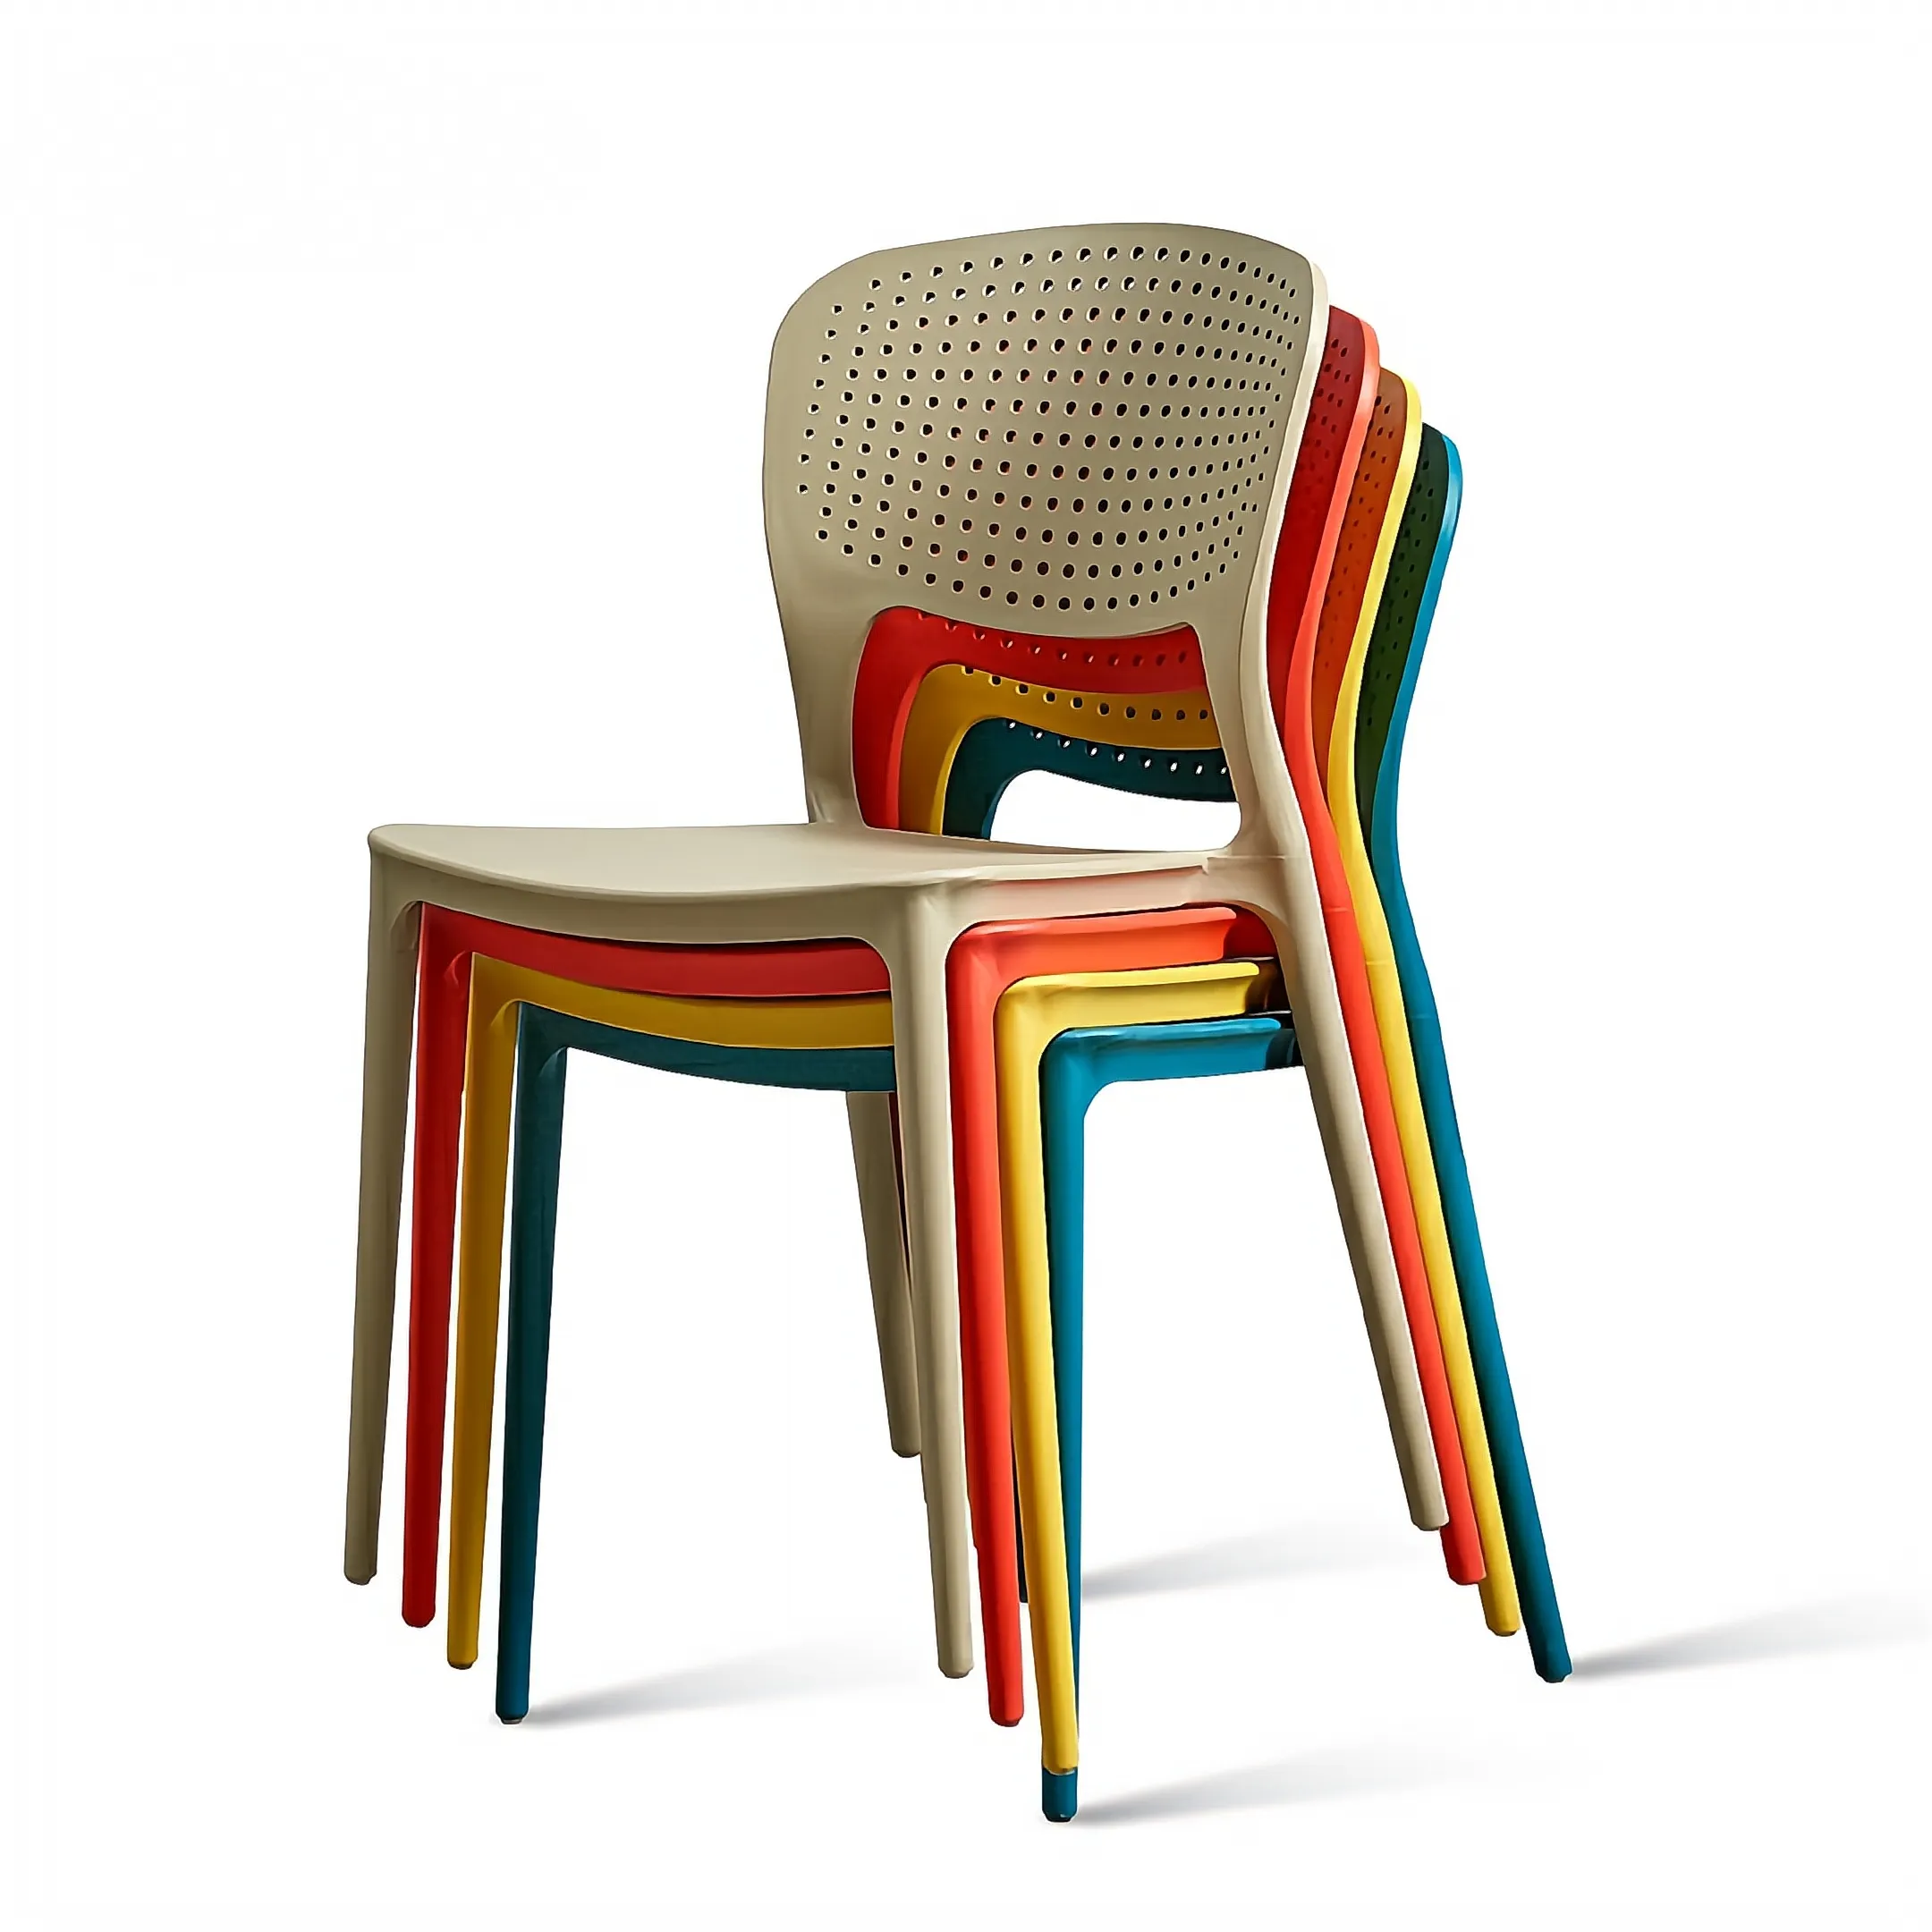 Sedia da pranzo per la casa di Design nordico sedia di plastica moderna semplice economica sgabello posteriore sedia da caffè a buon mercato